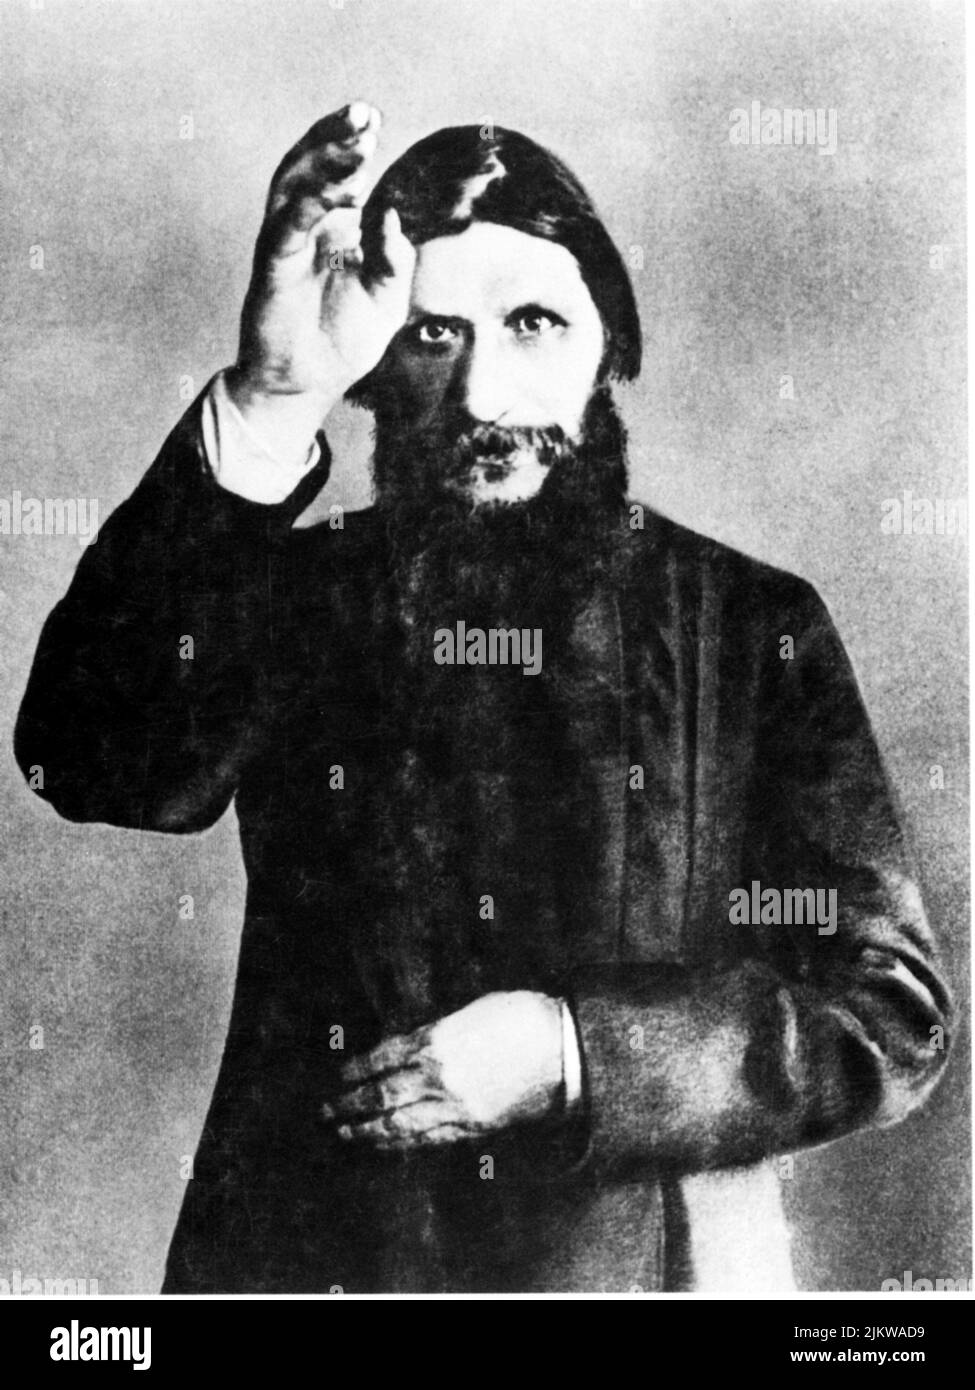 Il celebre sacerdote russo Grigorij Efimovic RASPUTIN ( Pockrovskoe , Siberia 1871 - San Pietroburgo 1916 ) - MAGO - MAGO - prete - monaco - ritratto - ratto - barba - politico - politico ---- Archivio GBB Foto Stock